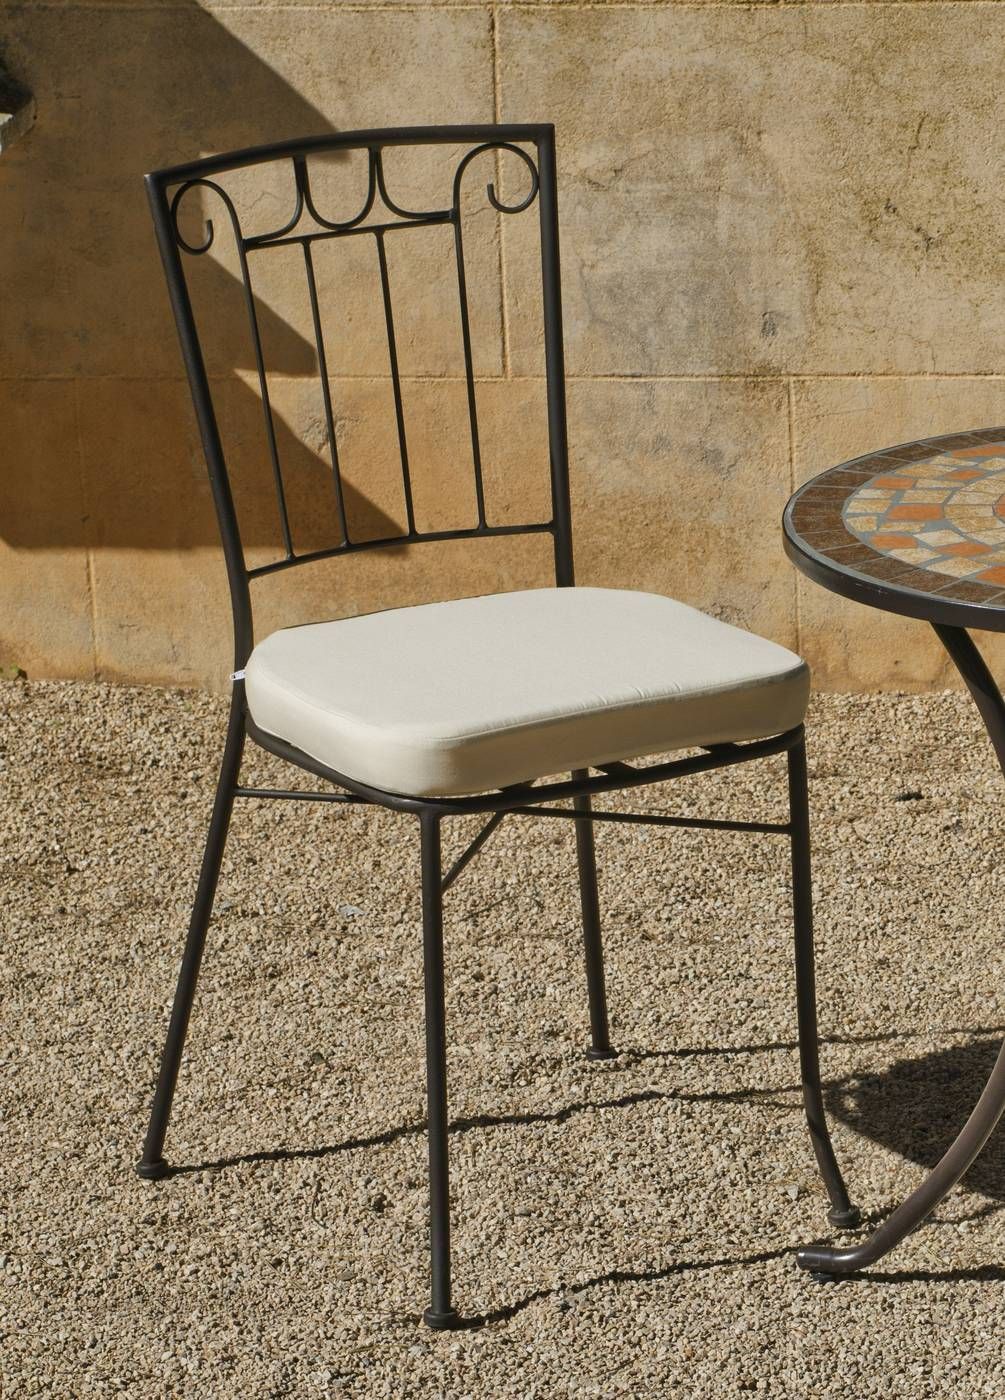 Sillas De Forja: Catálogo para instalar tus sillas On line - Decoración